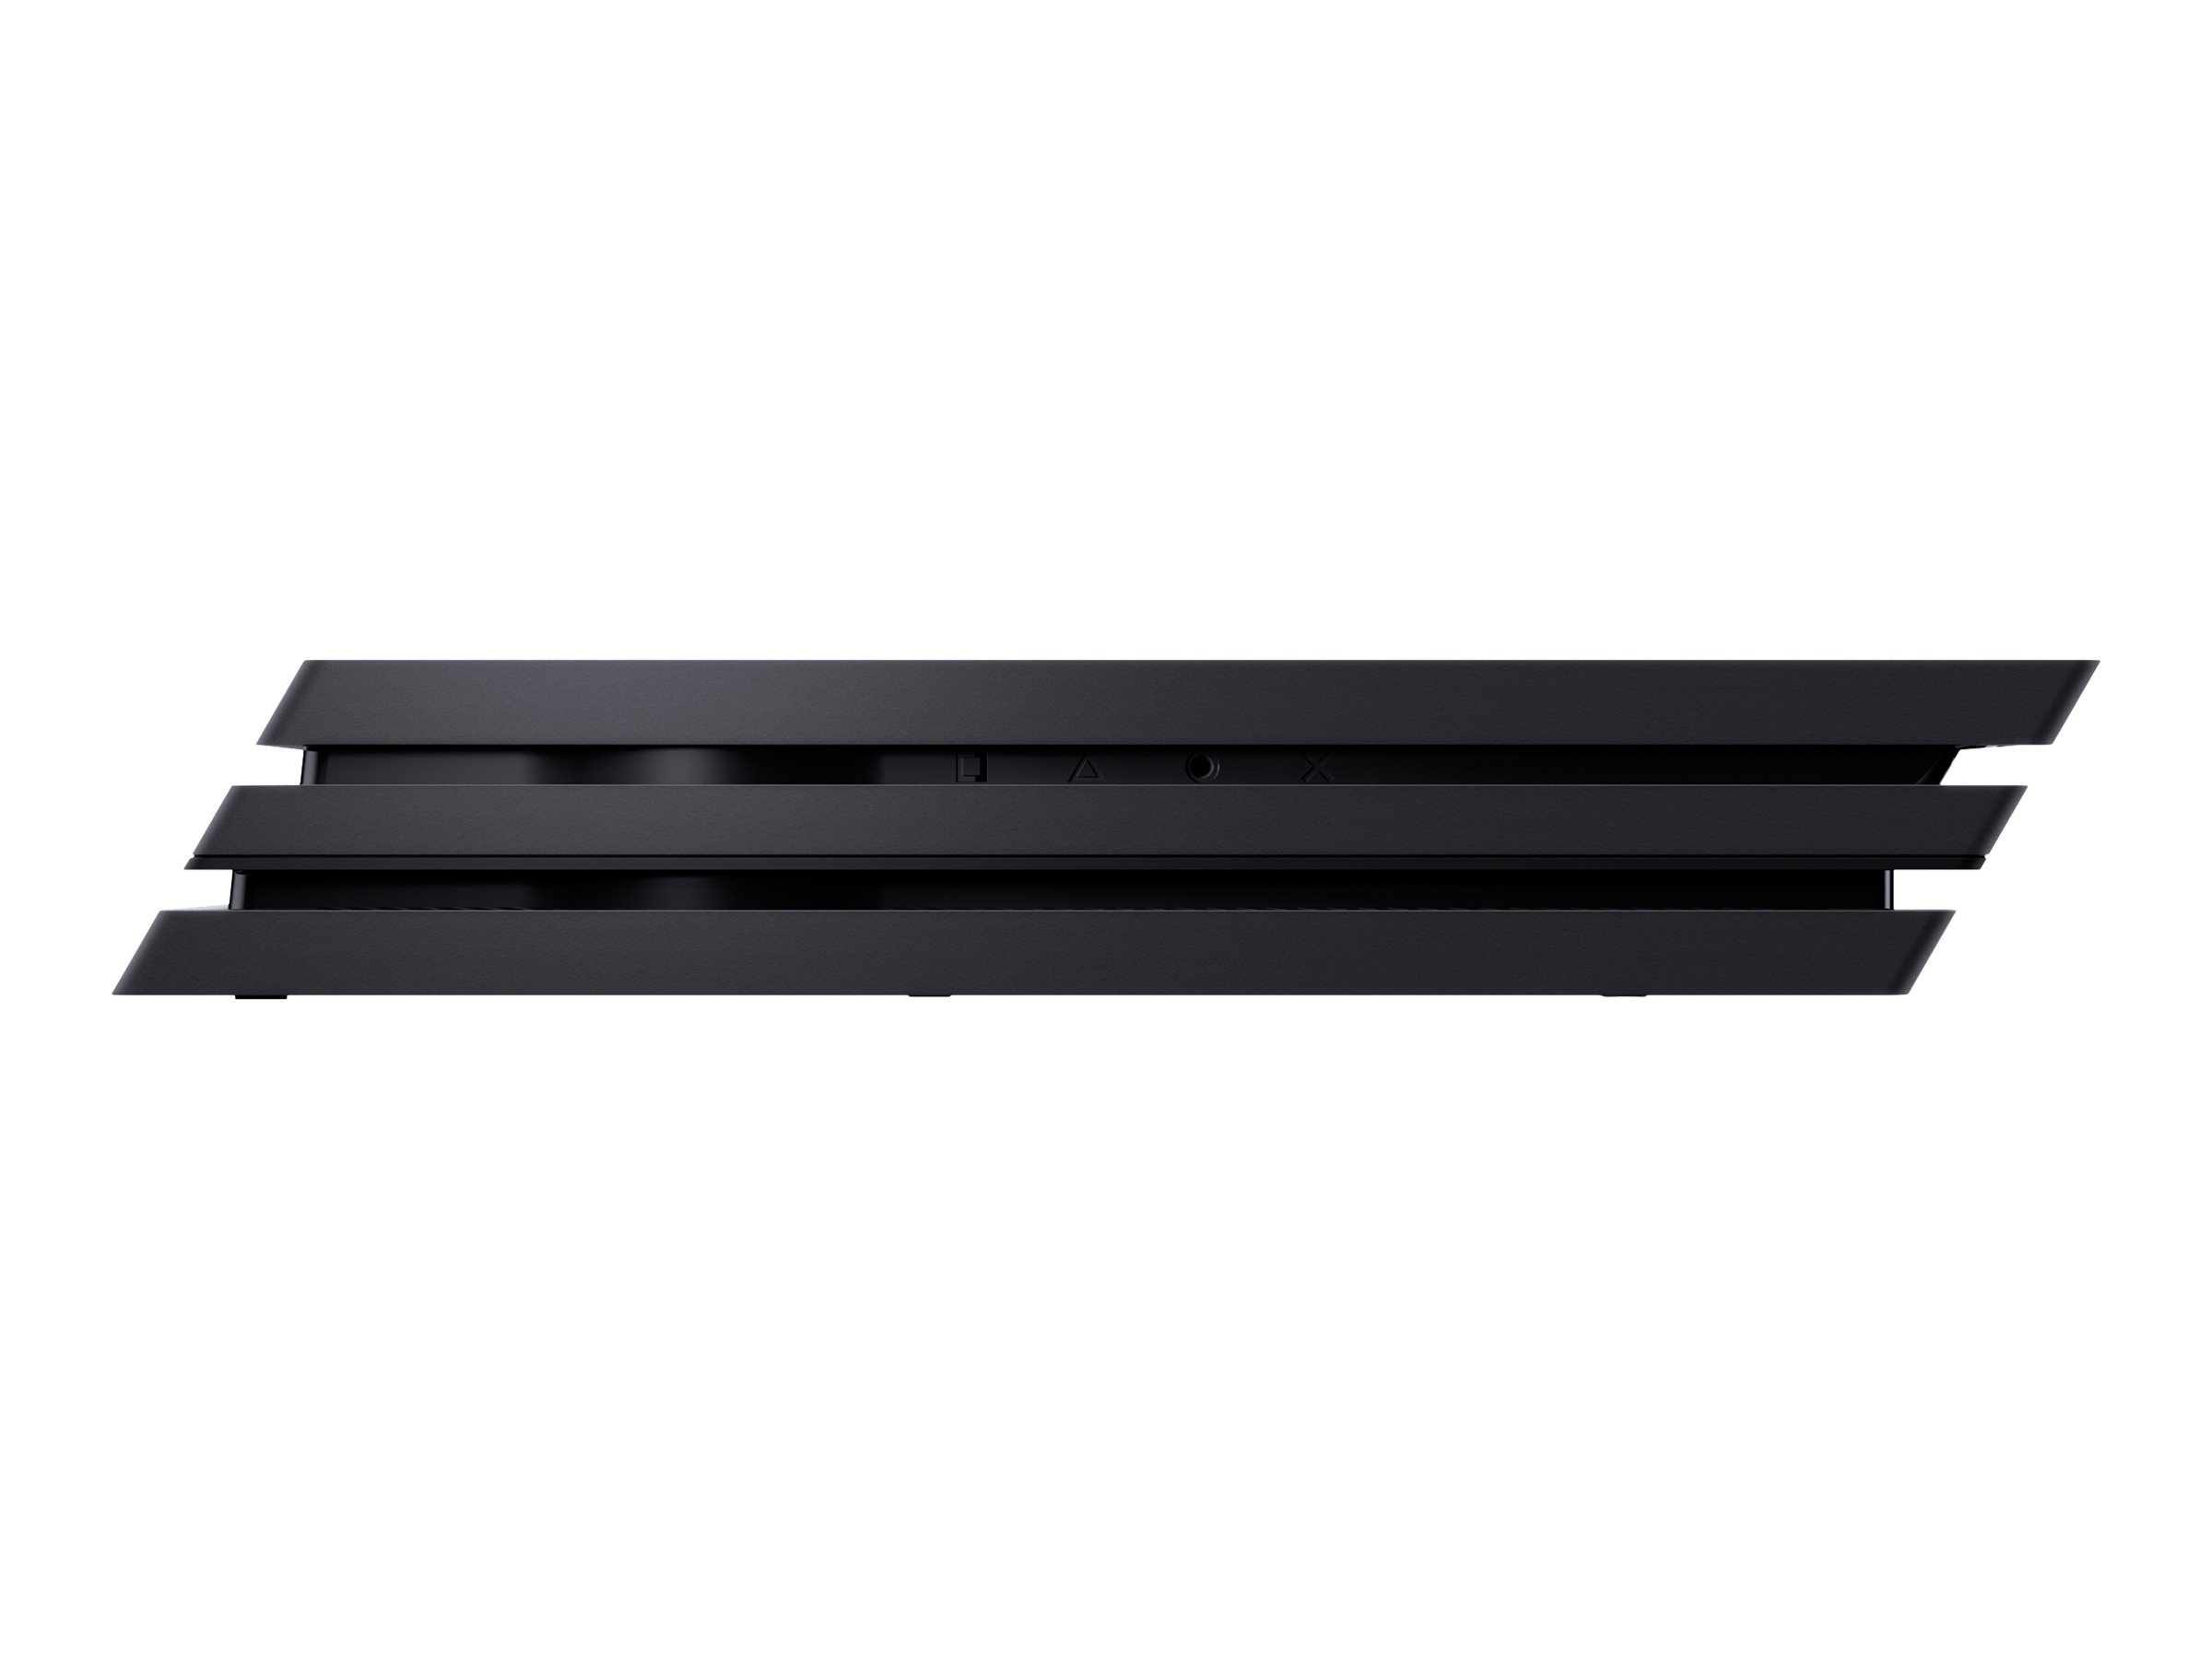  Sony - PlayStation 4 Pro Console (3002470) Jet Black